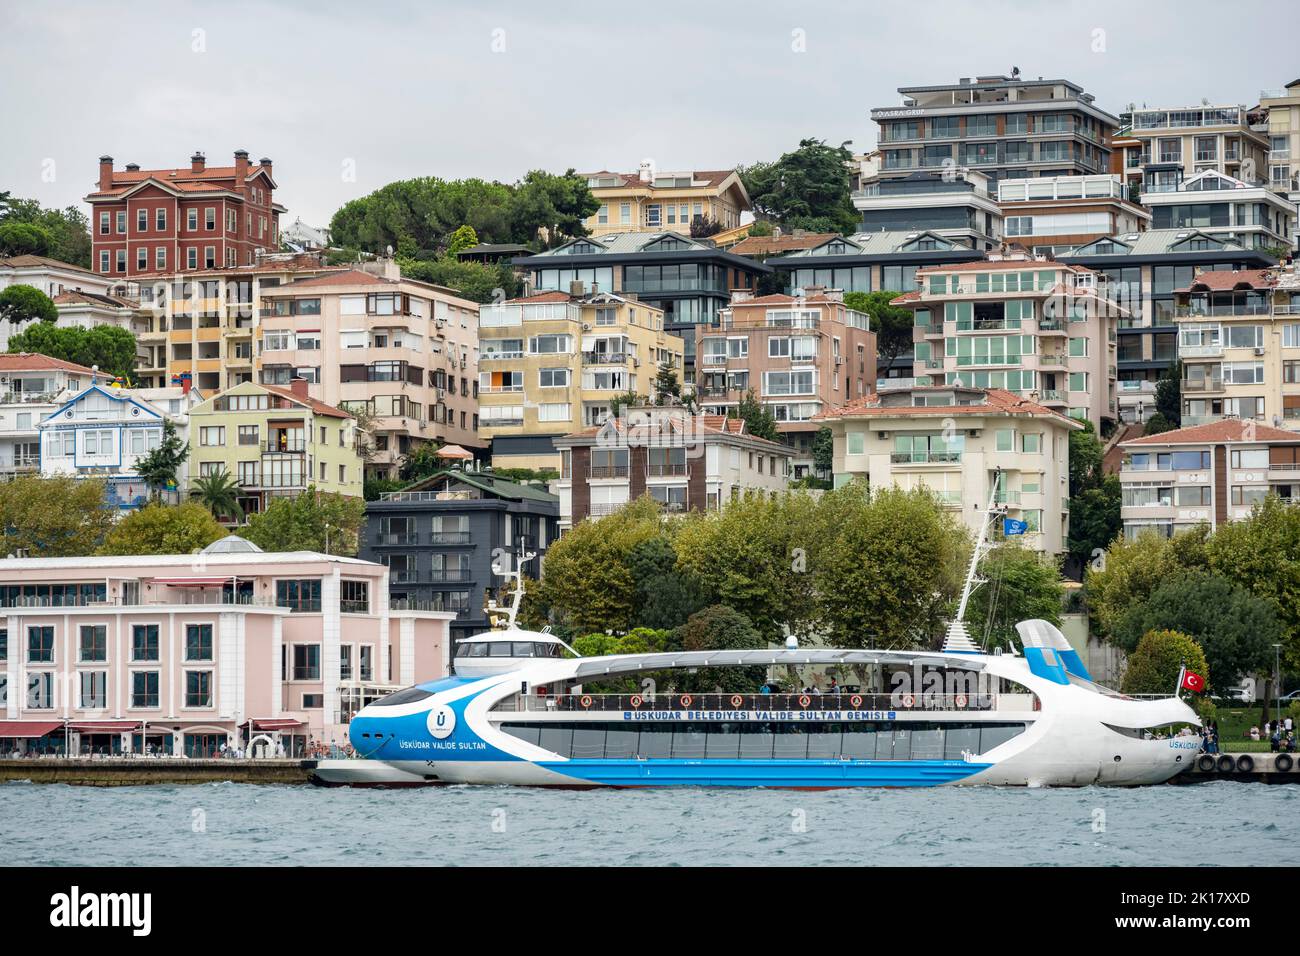 Türkei, Istanbul, Üsküdar, modernes Fährschiff Banque D'Images